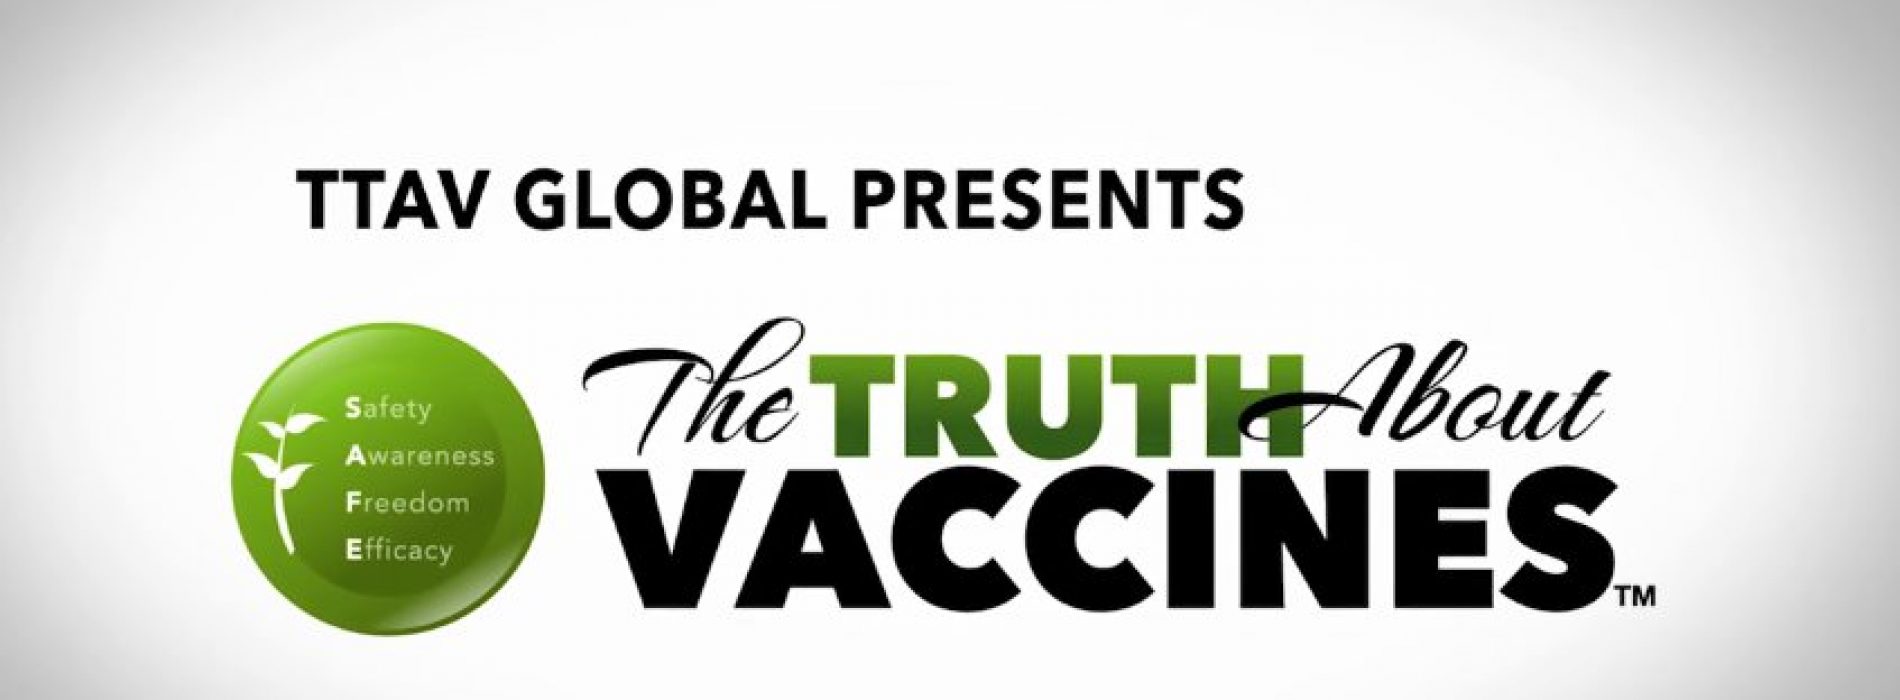 Deze opzienbarende documentaire over vaccins mág je niet missen